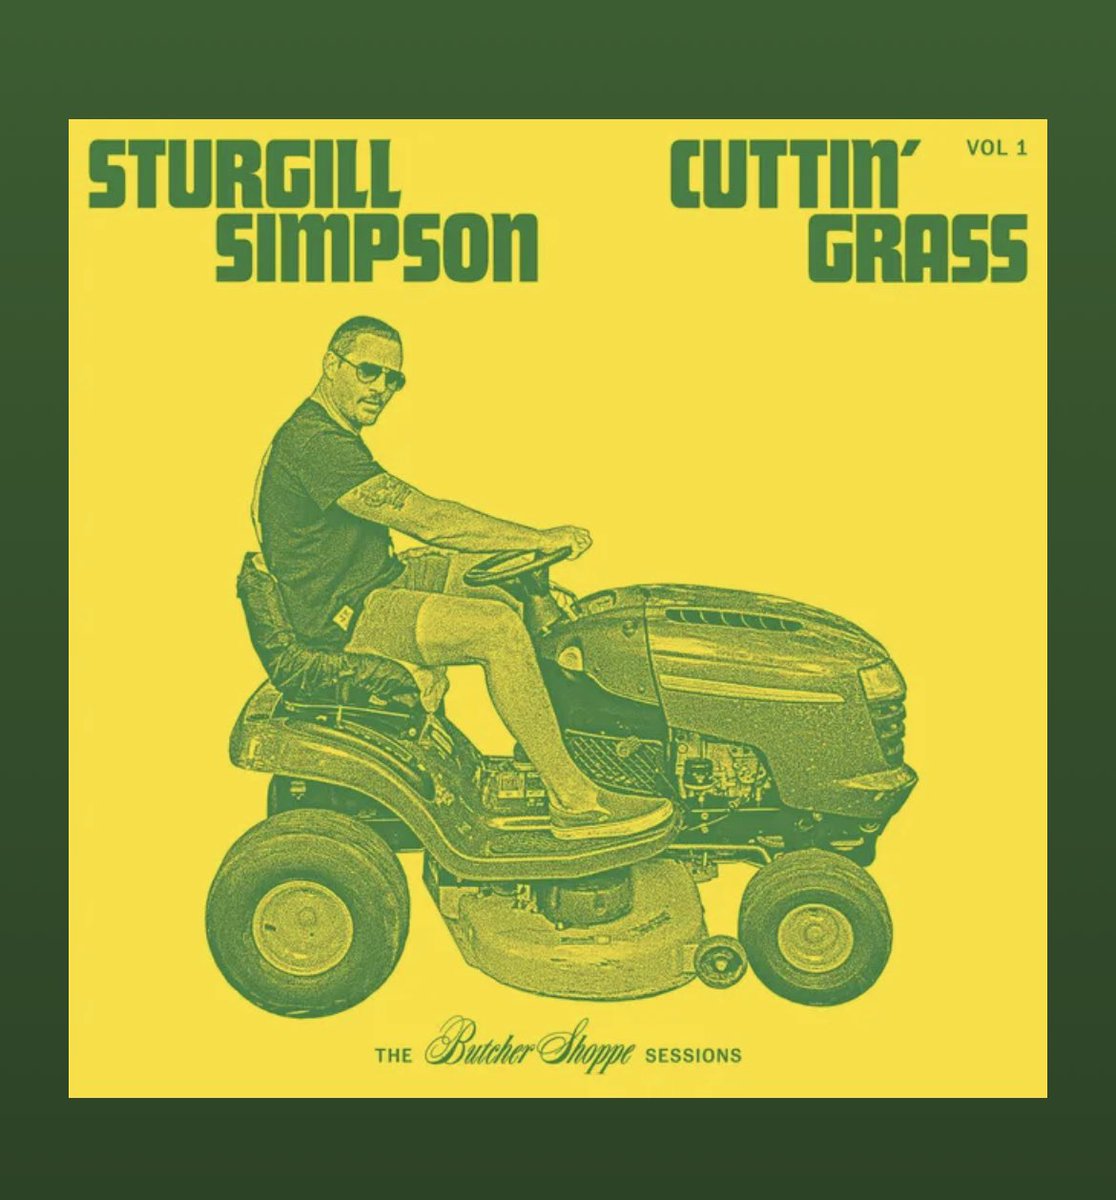 #sturgillsimpson all day